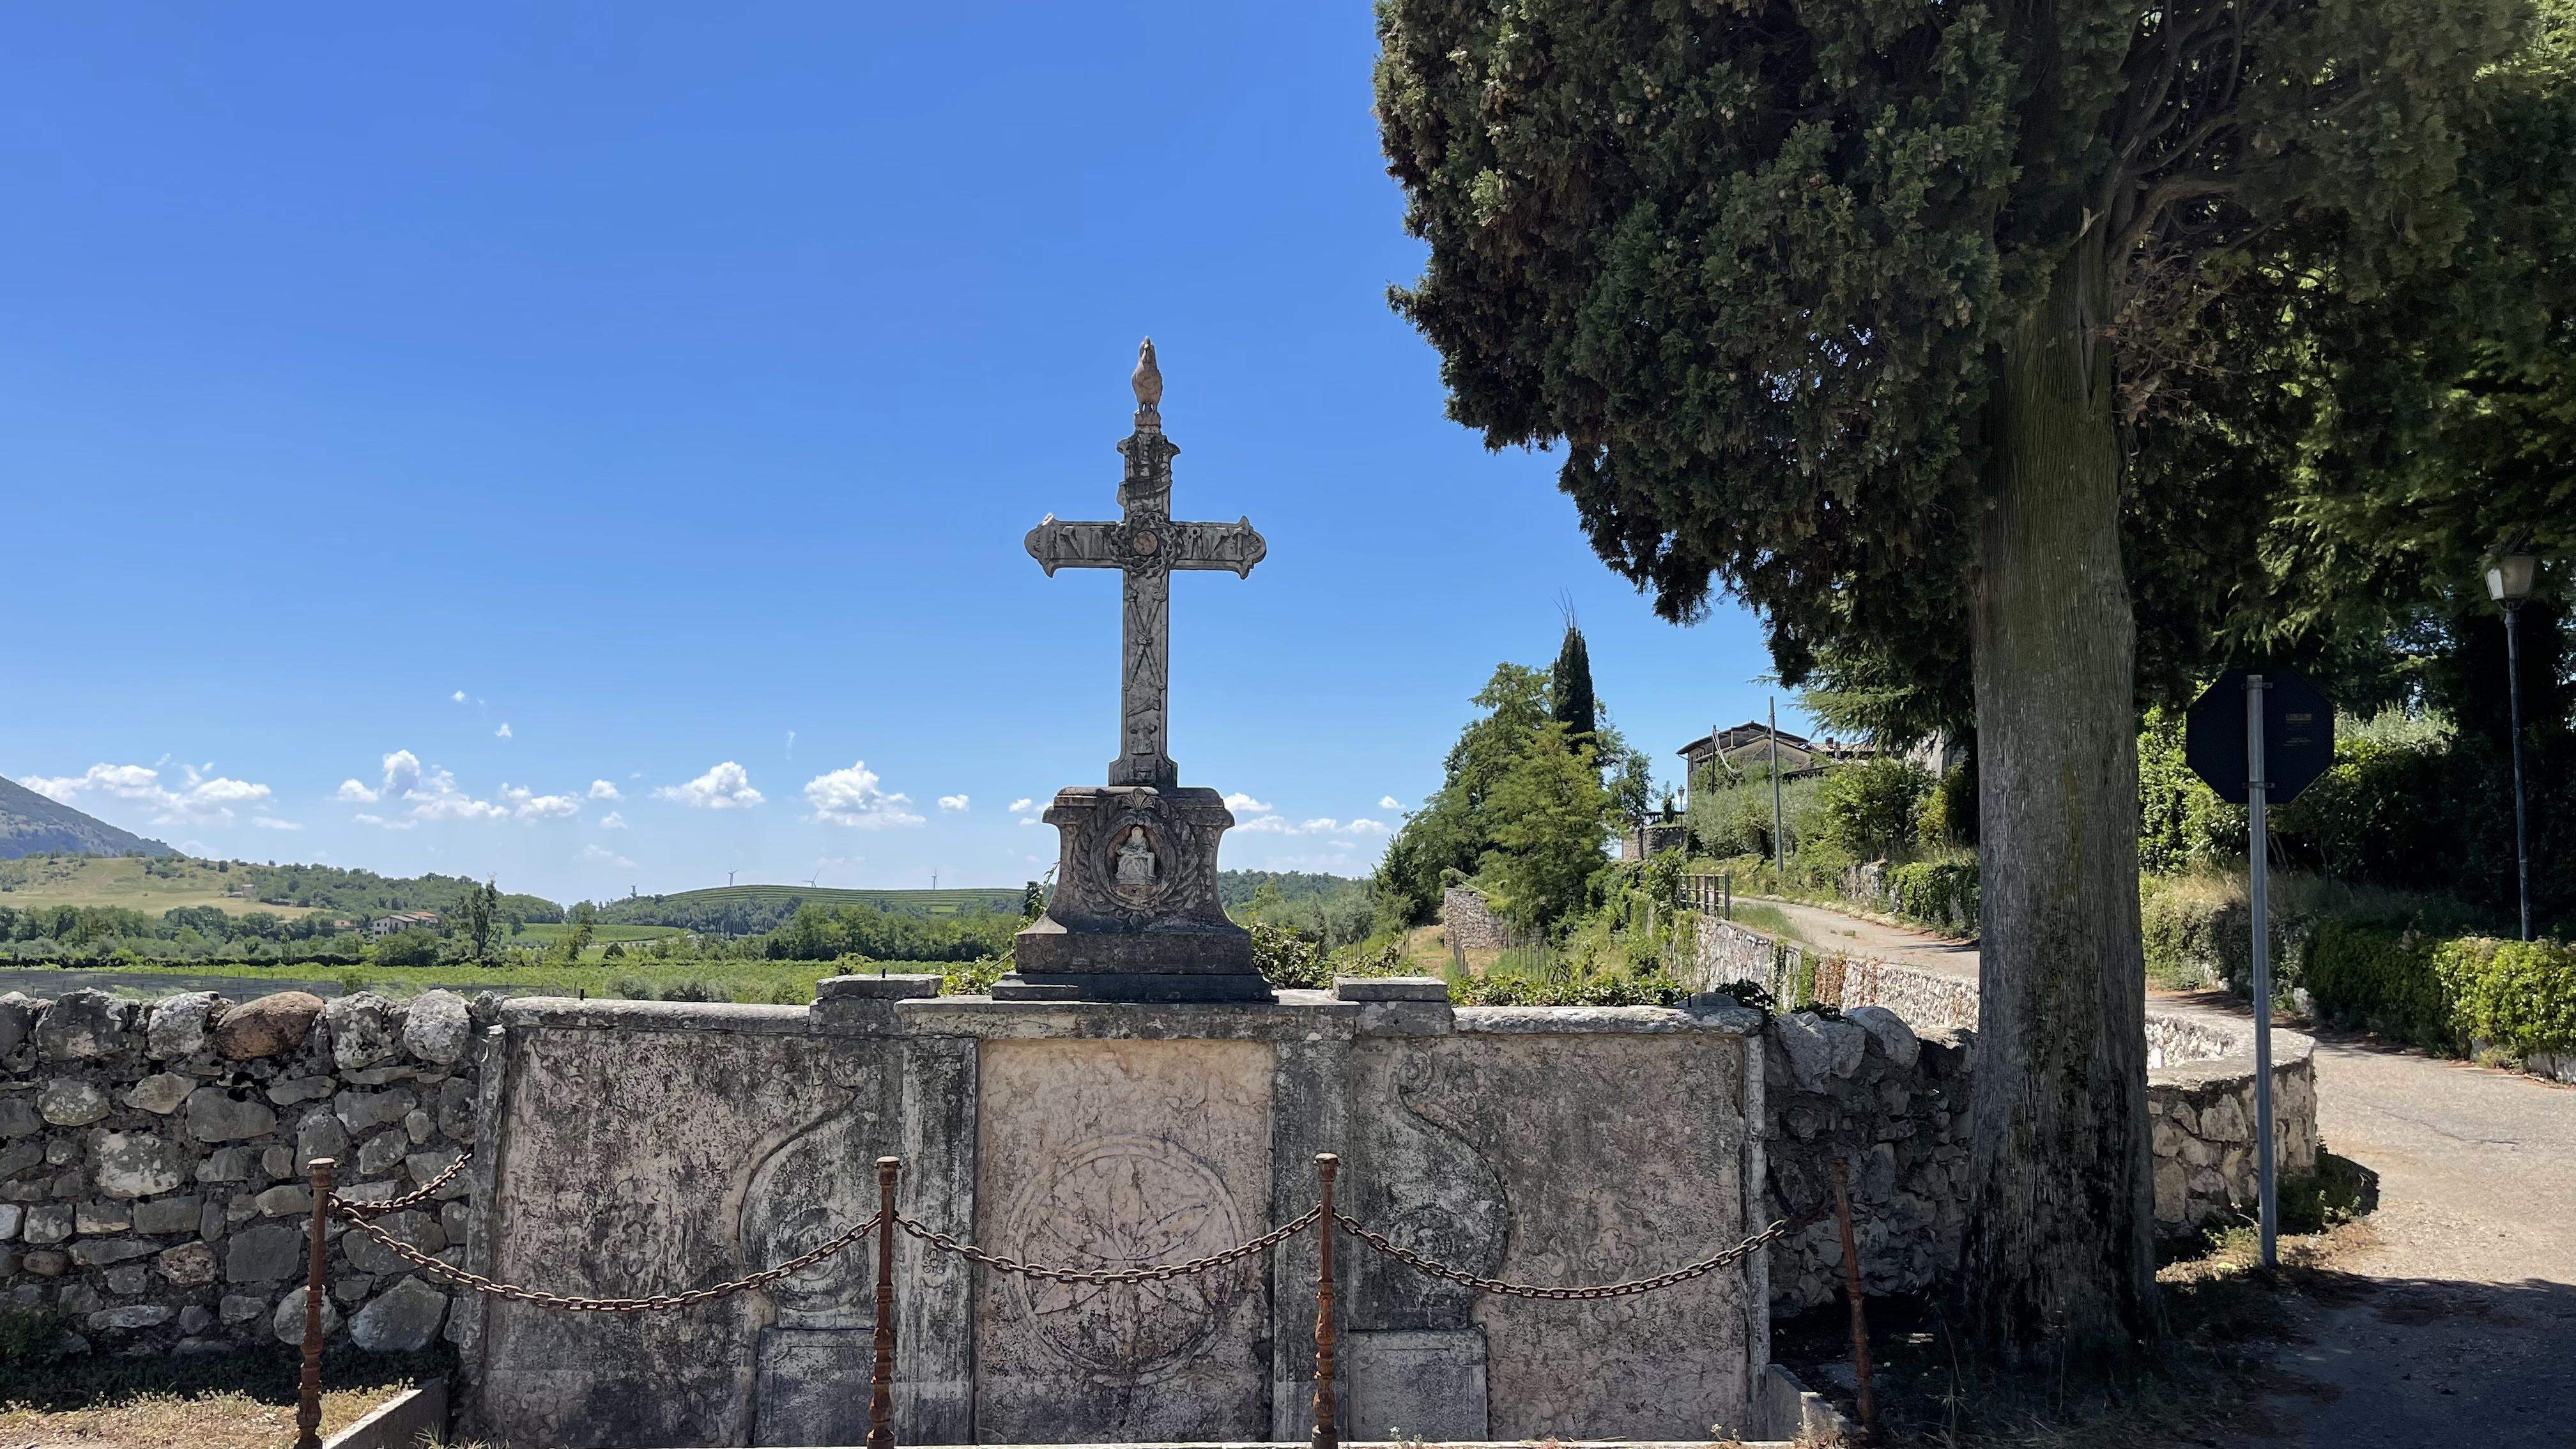 Sulla via del santuario, l'antica croce in località Platano, Caprino Veronese.